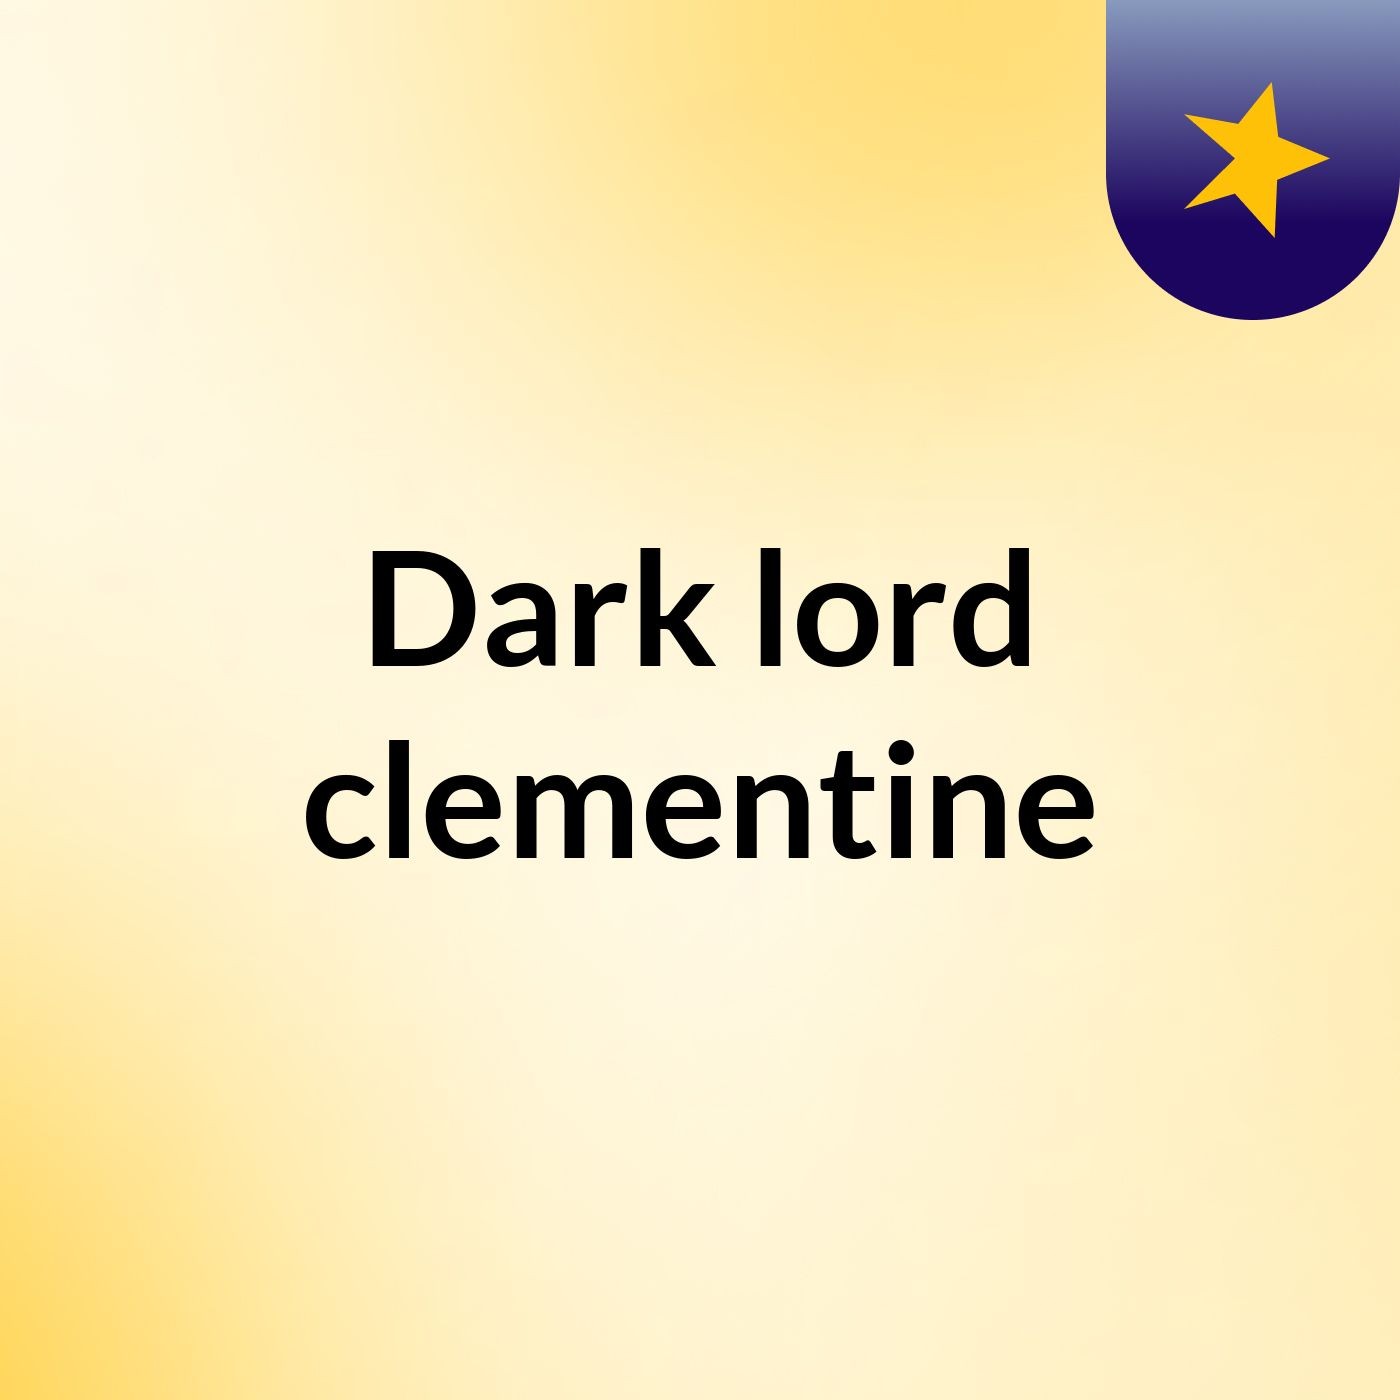 Episode 3 - Dark lord clementine